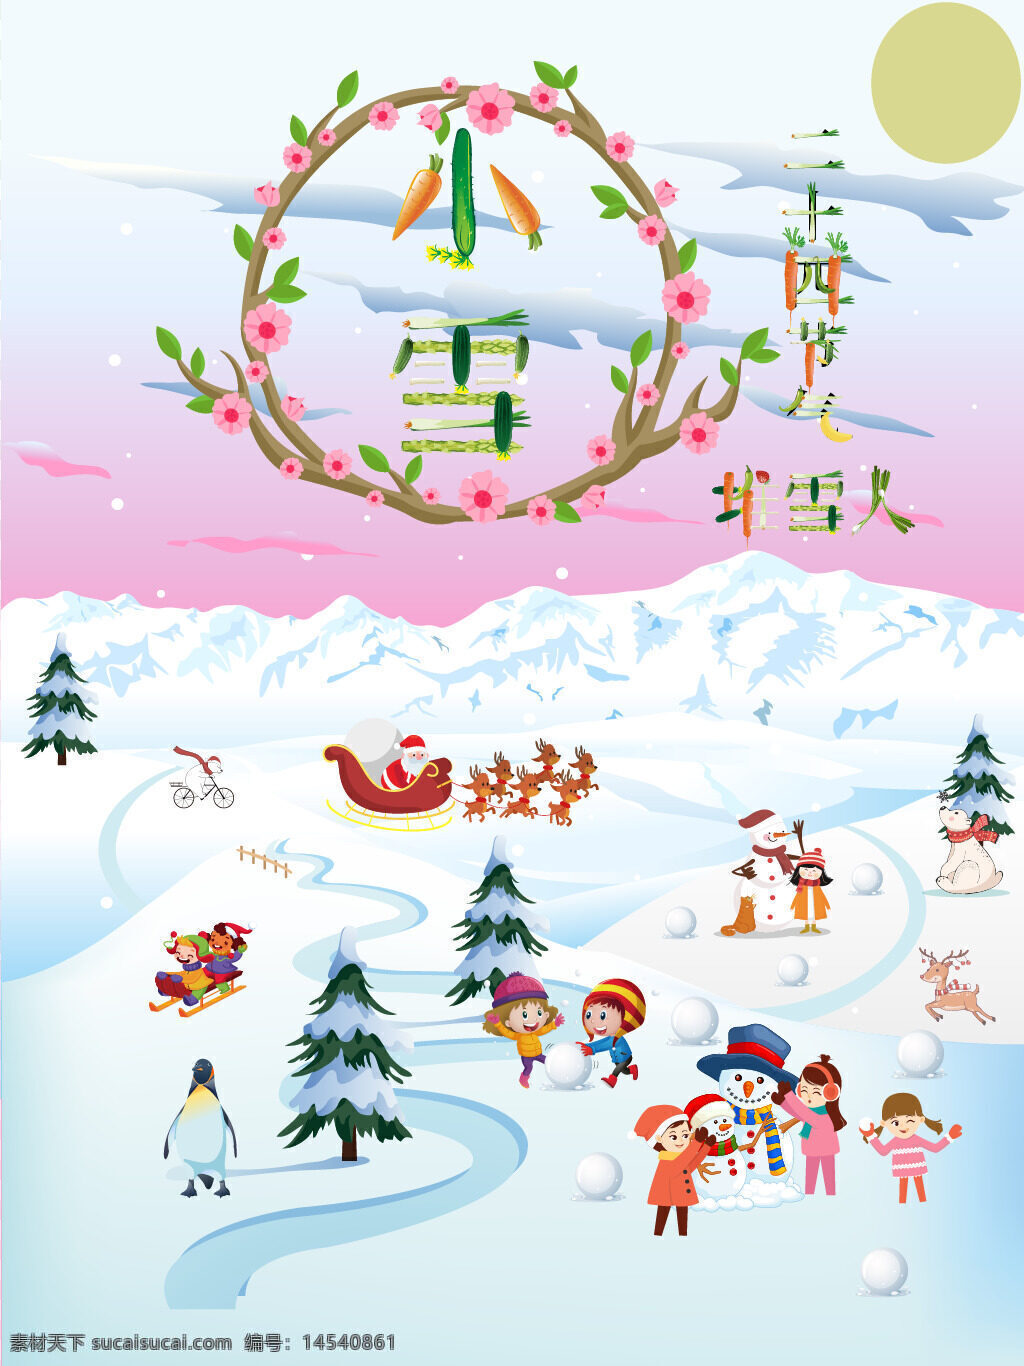 小雪 二十四节气 堆雪球 雪人 雪橇 熊 鹿 圣诞树 圣诞老人 小雪二十四节气 堆雪球雪人 小雪二十四节气堆雪球雪人雪橇熊鹿圣诞树